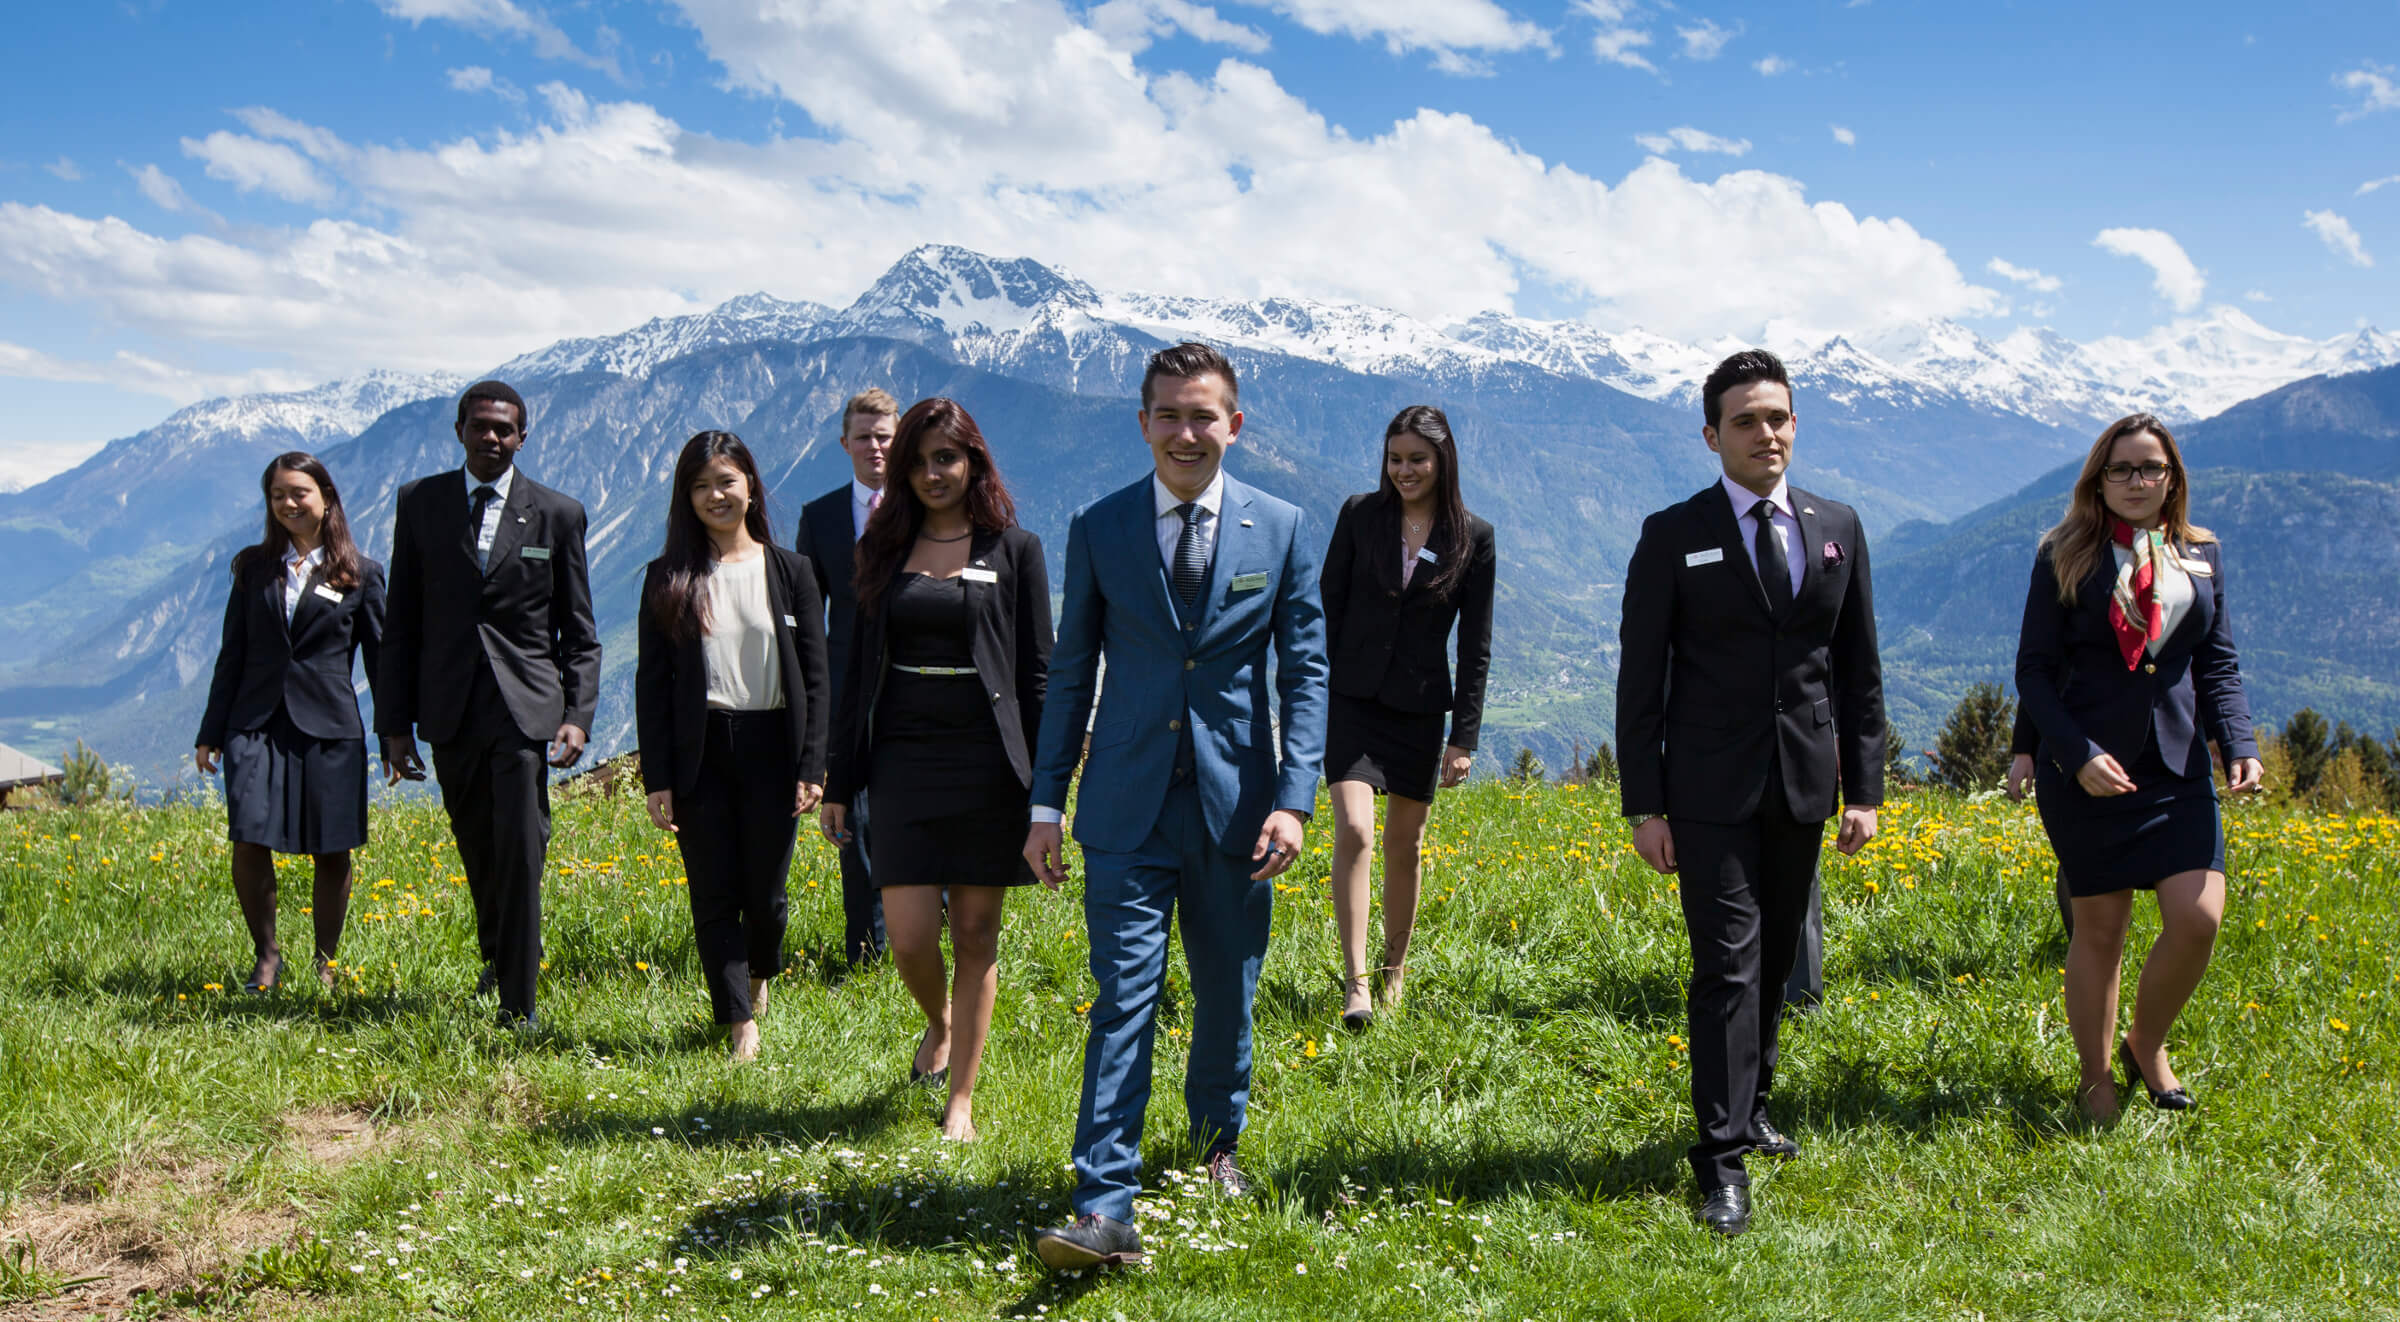 Les. Les Roches International School of Hotel Management. Швейцария деловой стиль. Деловая встреча на природе. Деловая одежда в туризме.